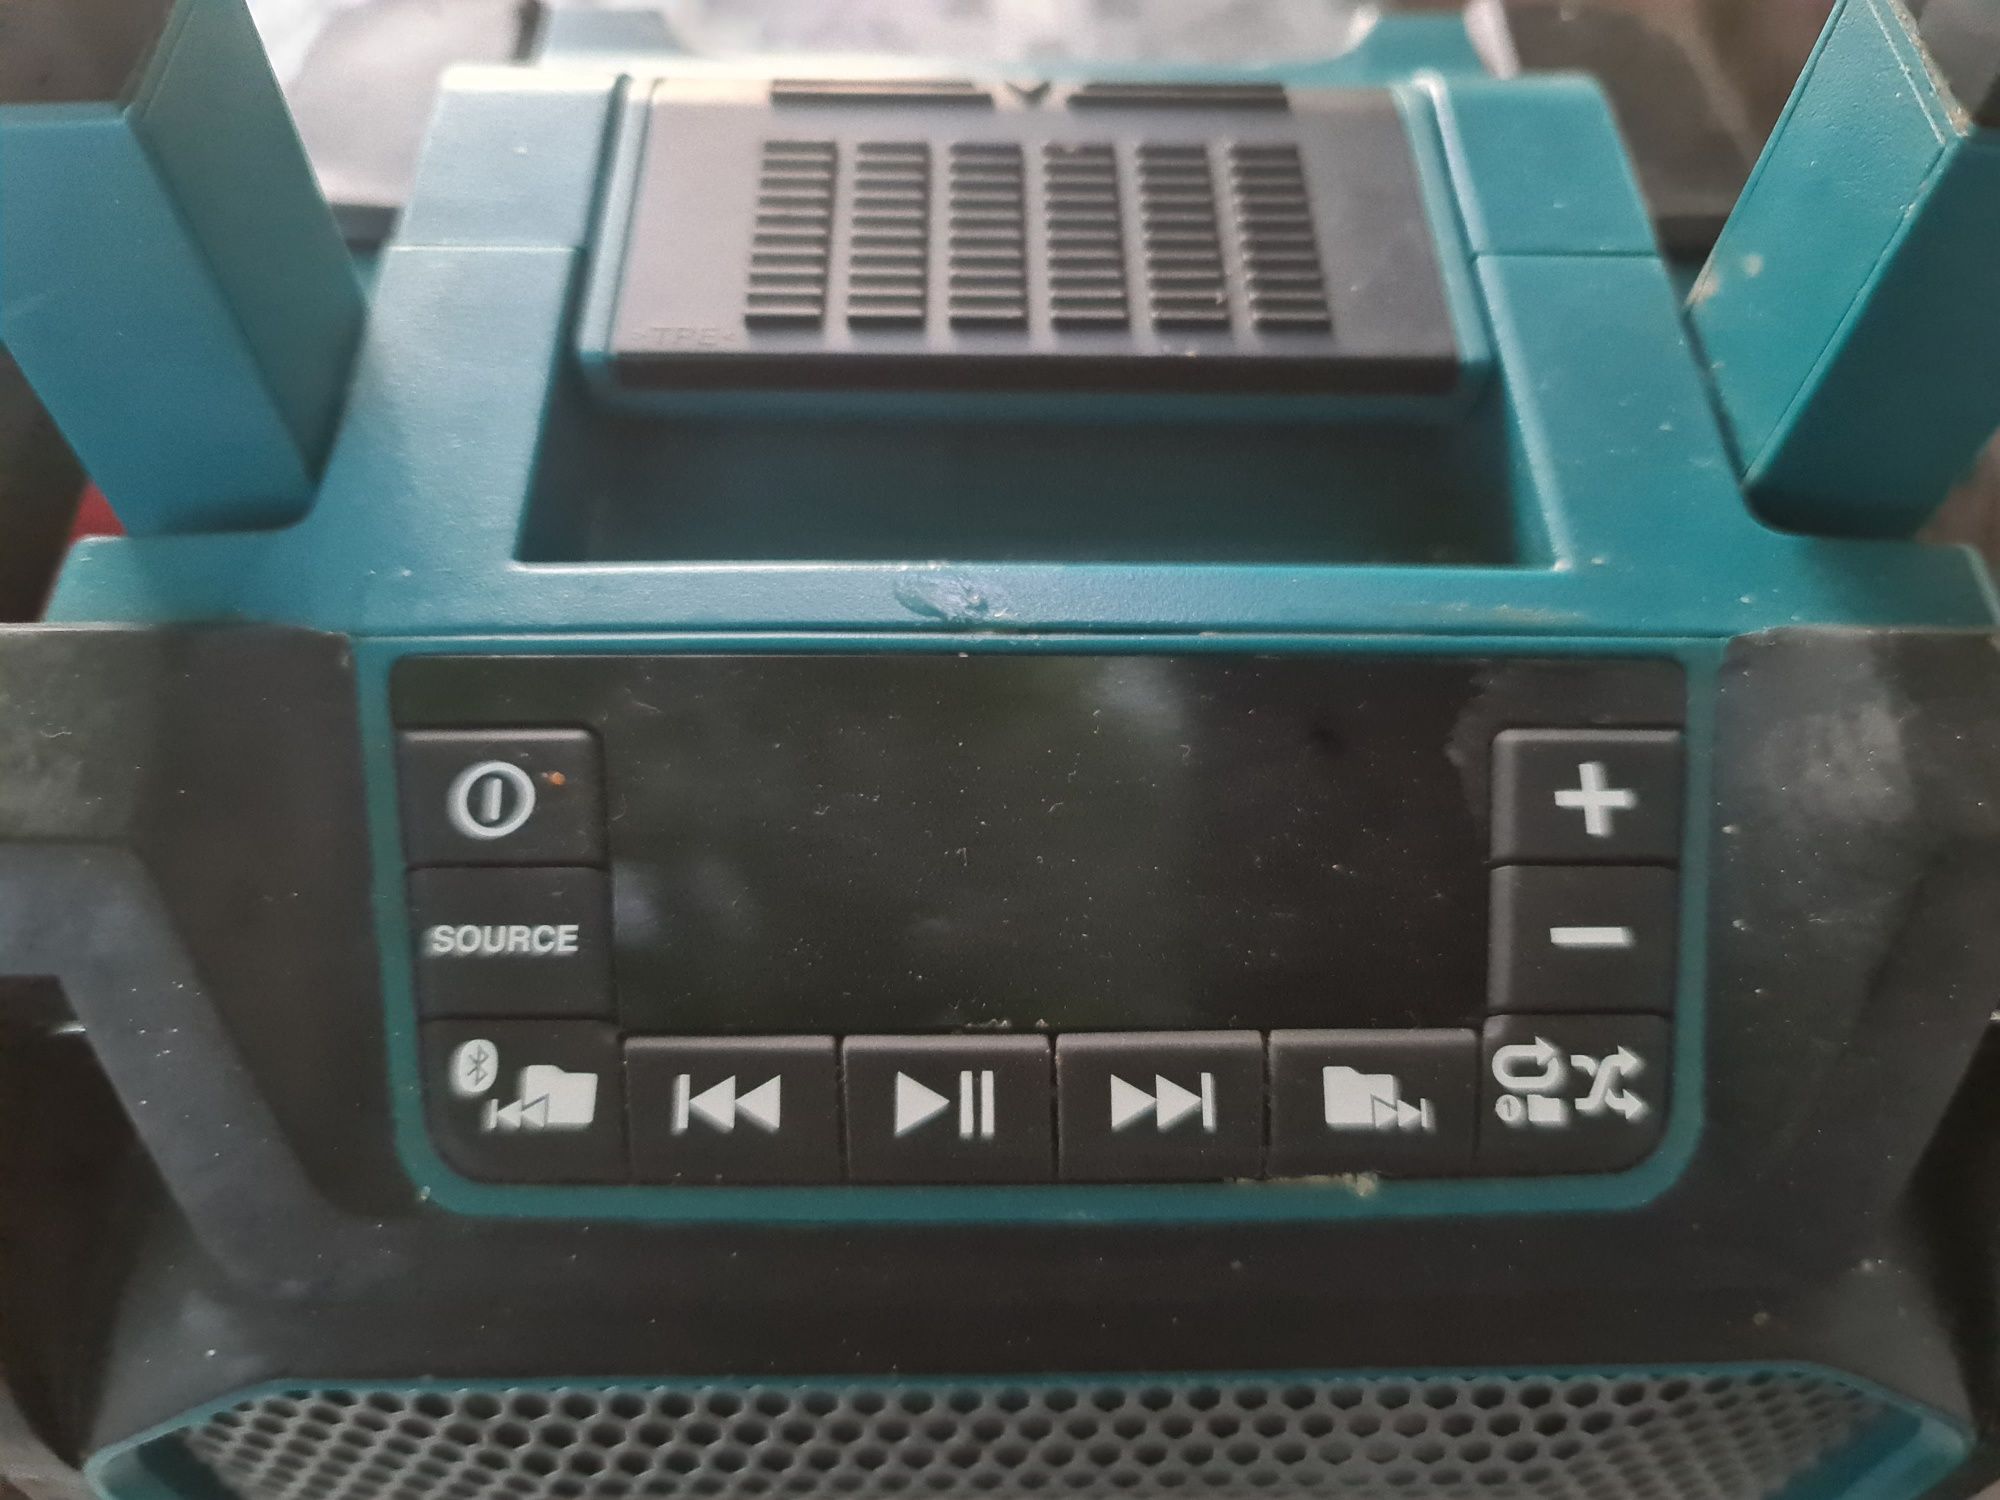 Milwaukee M18 JSR radio /Makita boxa Bluetooth DMR202